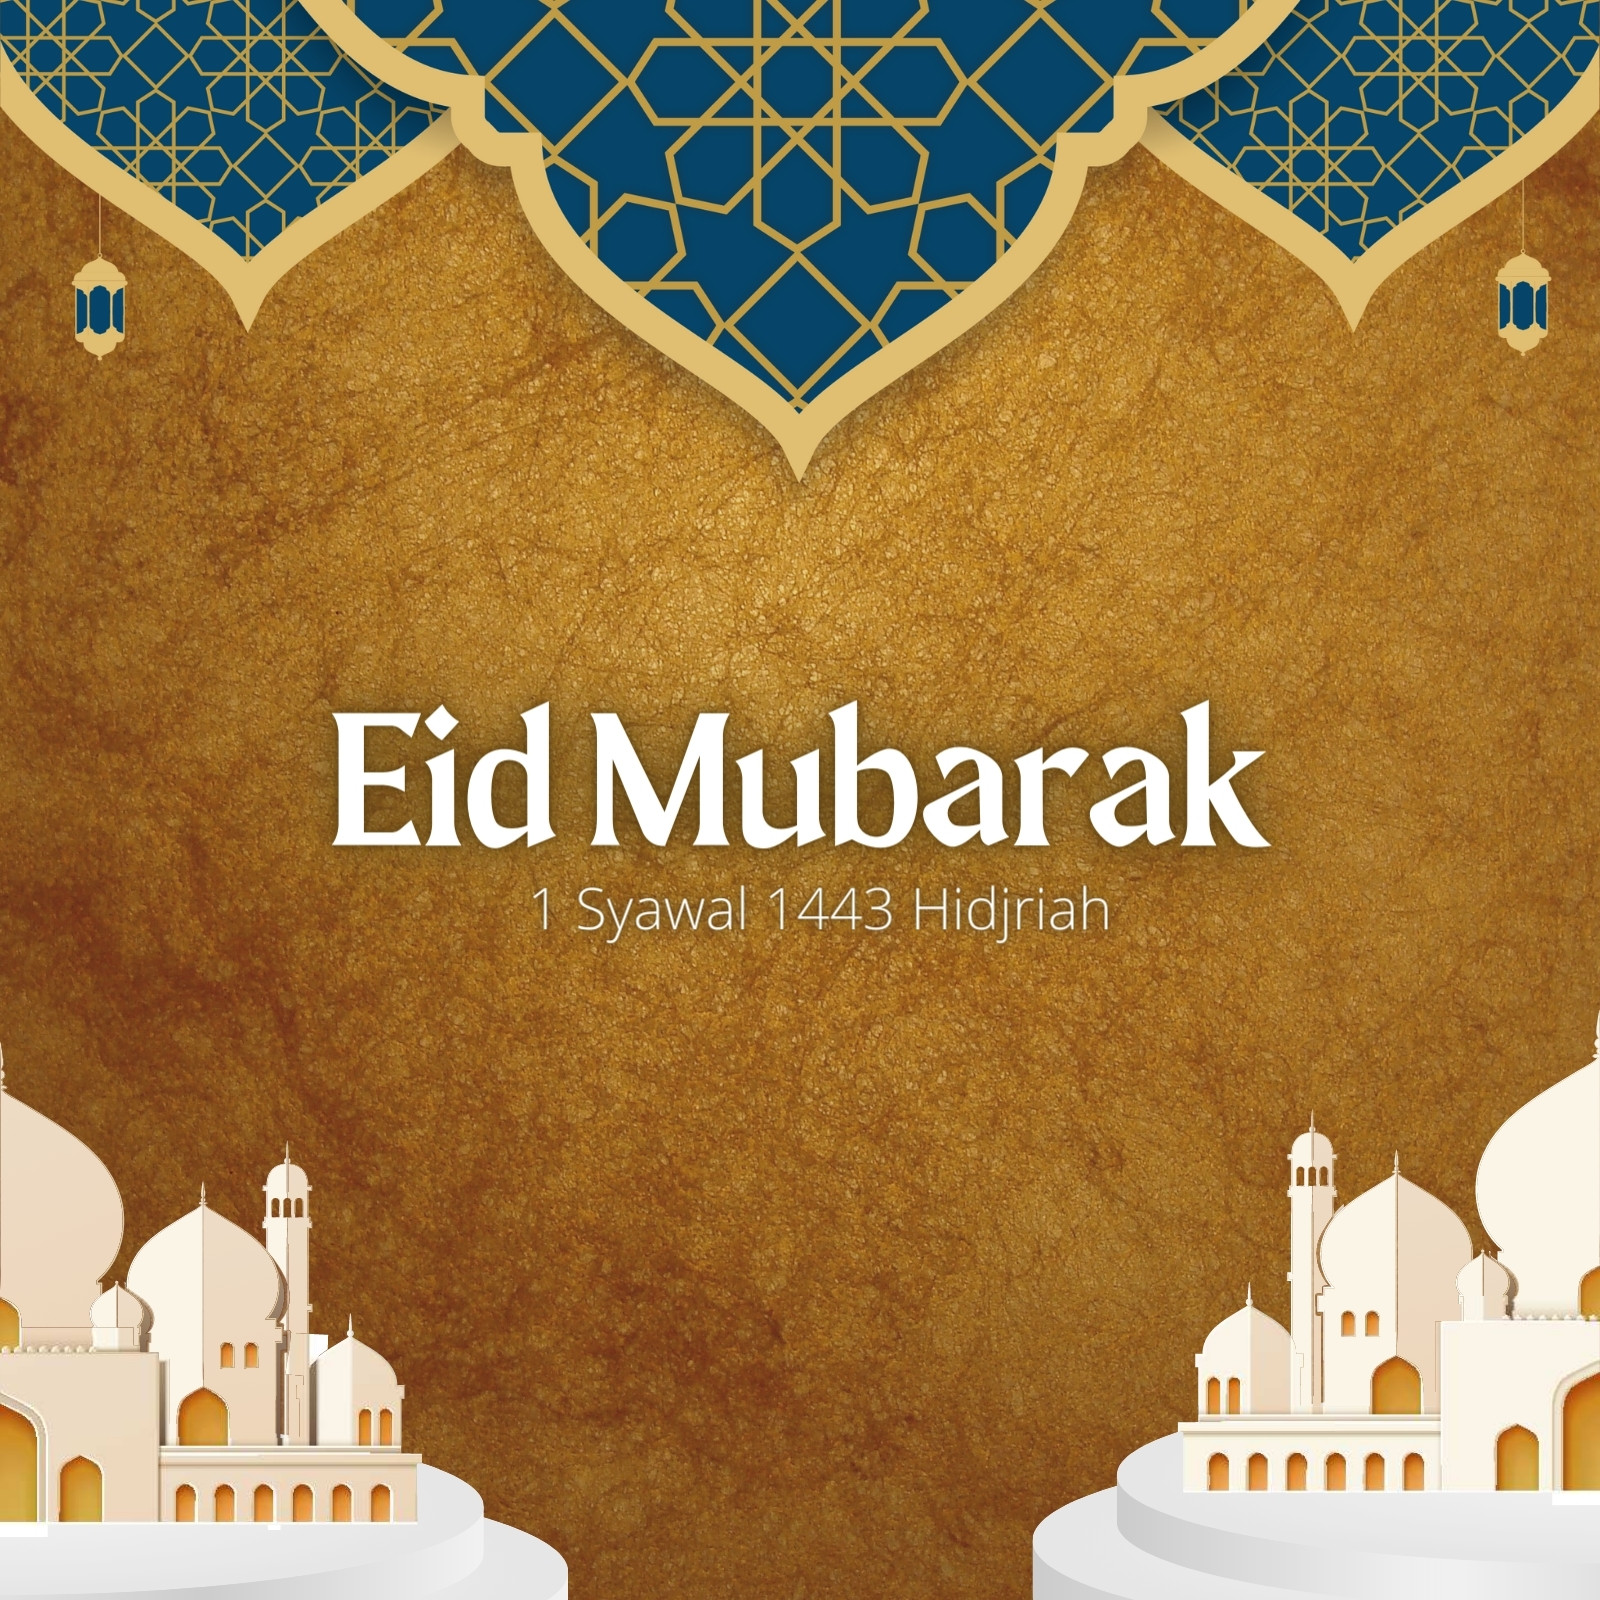 Mẫu Eid Mubarak Templates là một sự lựa chọn tuyệt vời để chúc mừng ngày Lễ Eid của bạn. Với sự kết hợp giữa màu sắc và hình ảnh cổ điển, chúng sẽ làm cho những người thân yêu của bạn cảm thấy vui lòng và đáng yêu.